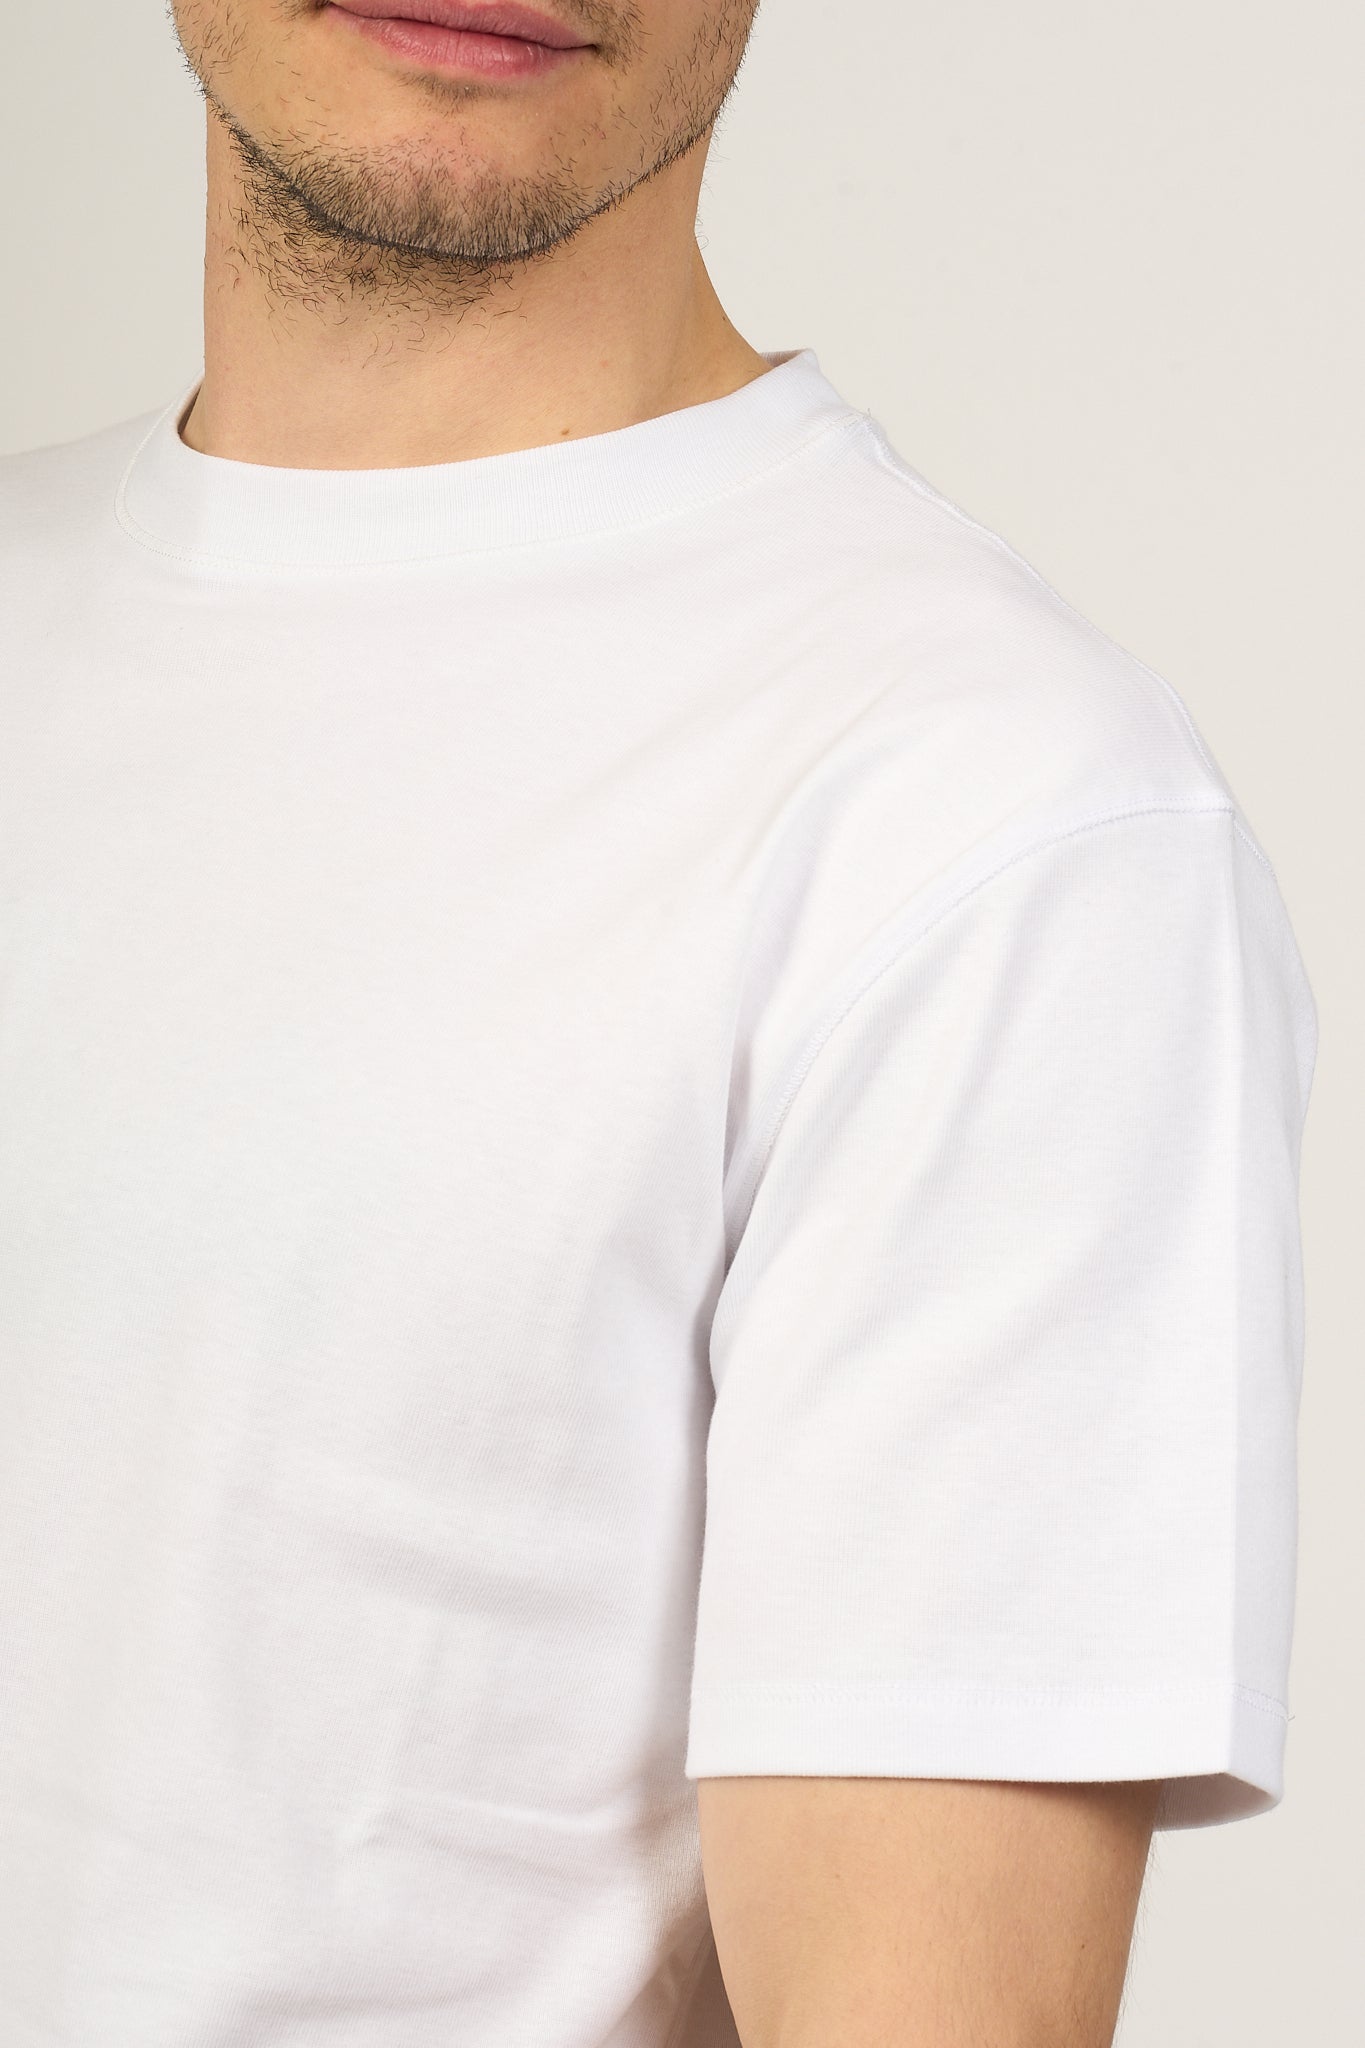 Hosio T-shirt Bianco Uomo-5